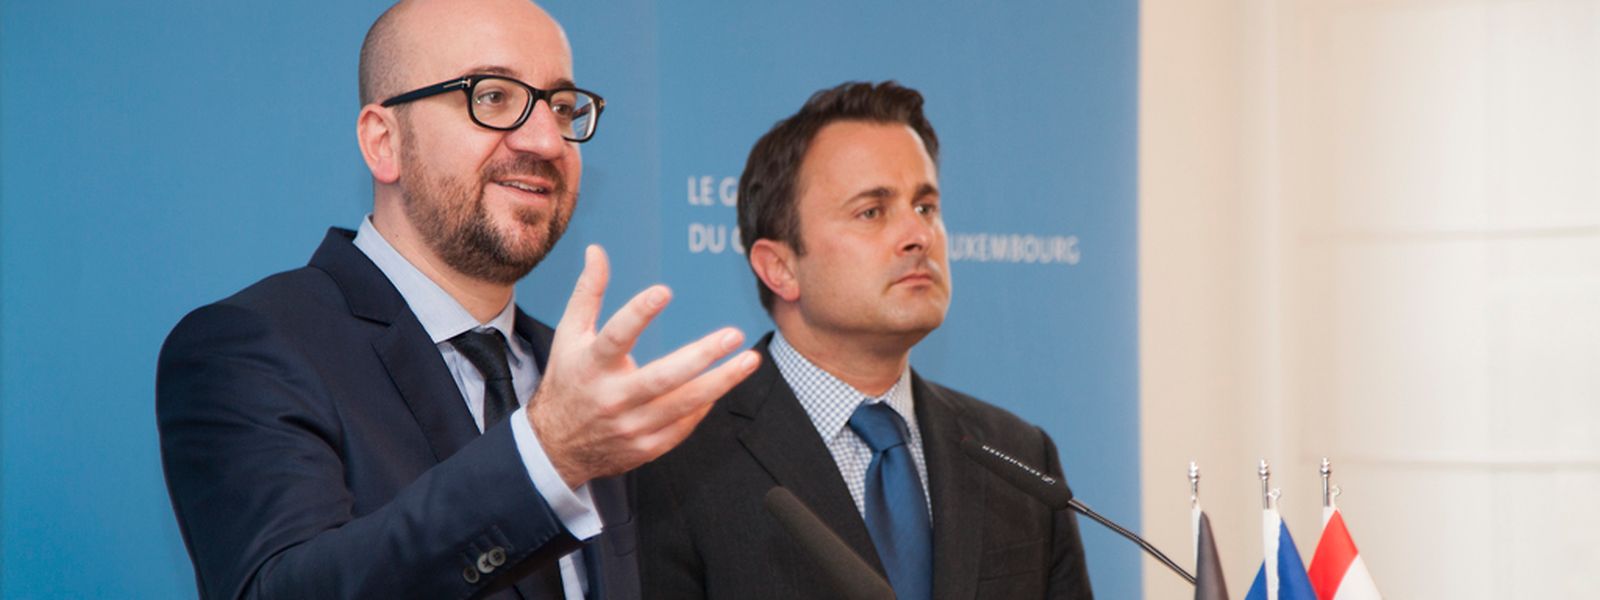 Charles Michel traf seinen Amtskollegen Xavier Bettel in Luxemburg.